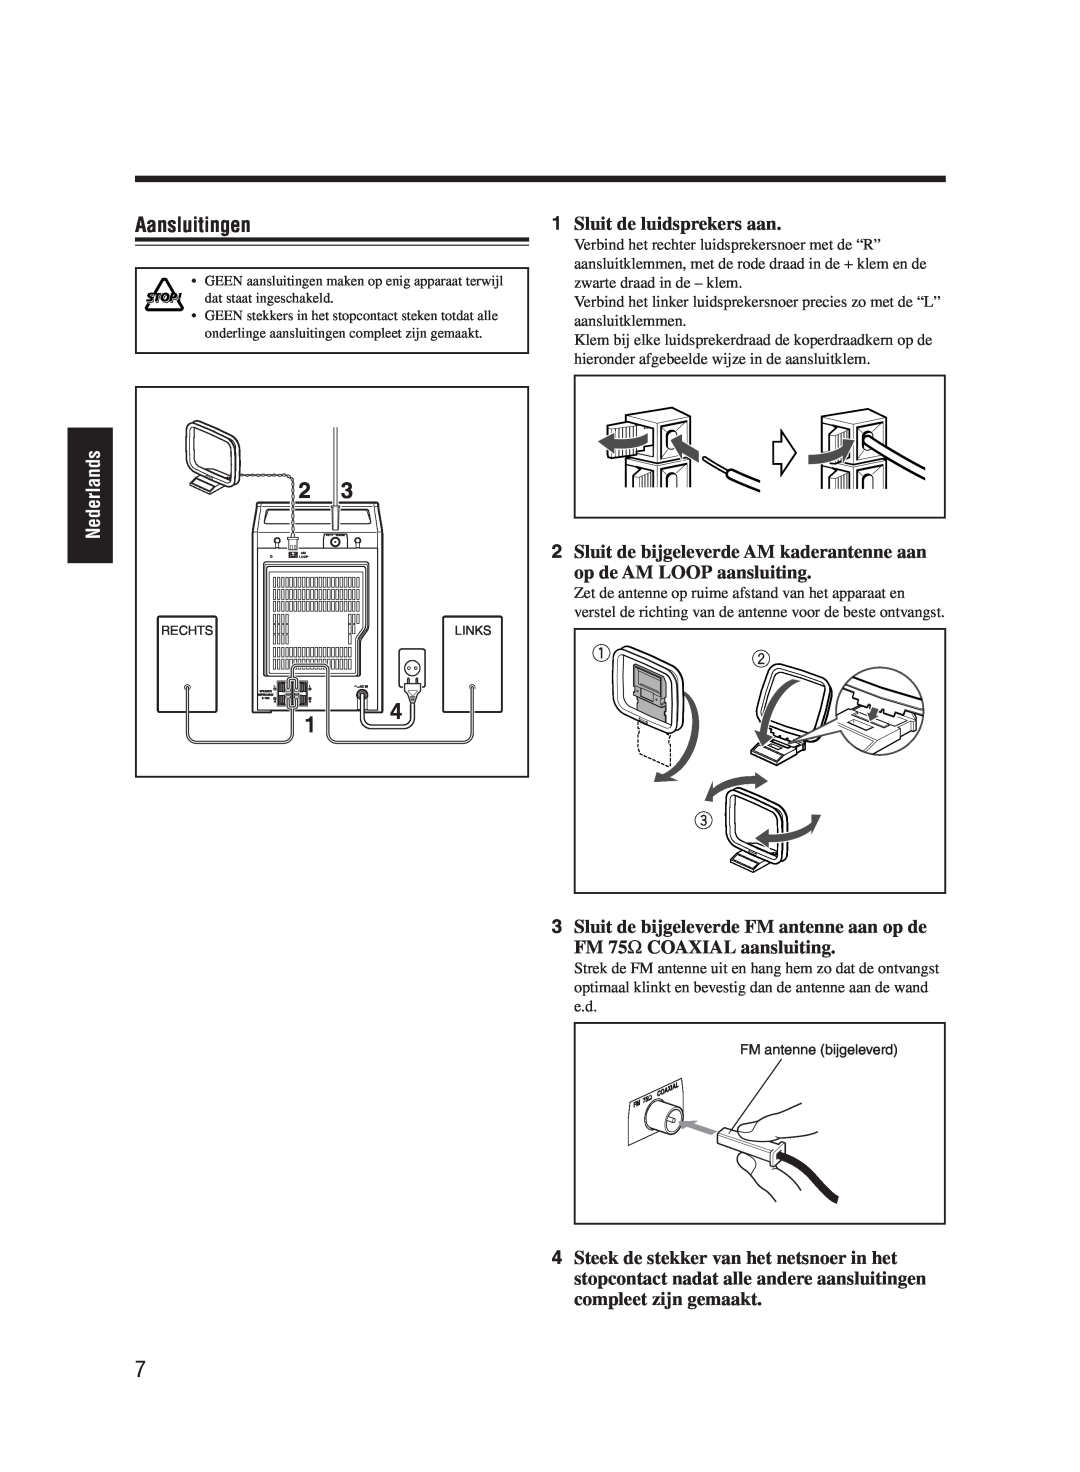 JVC UX-M55 manual Aansluitingen, Sluit de luidsprekers aan, Nederlands, 3Sluit de bijgeleverde FM antenne aan op de 